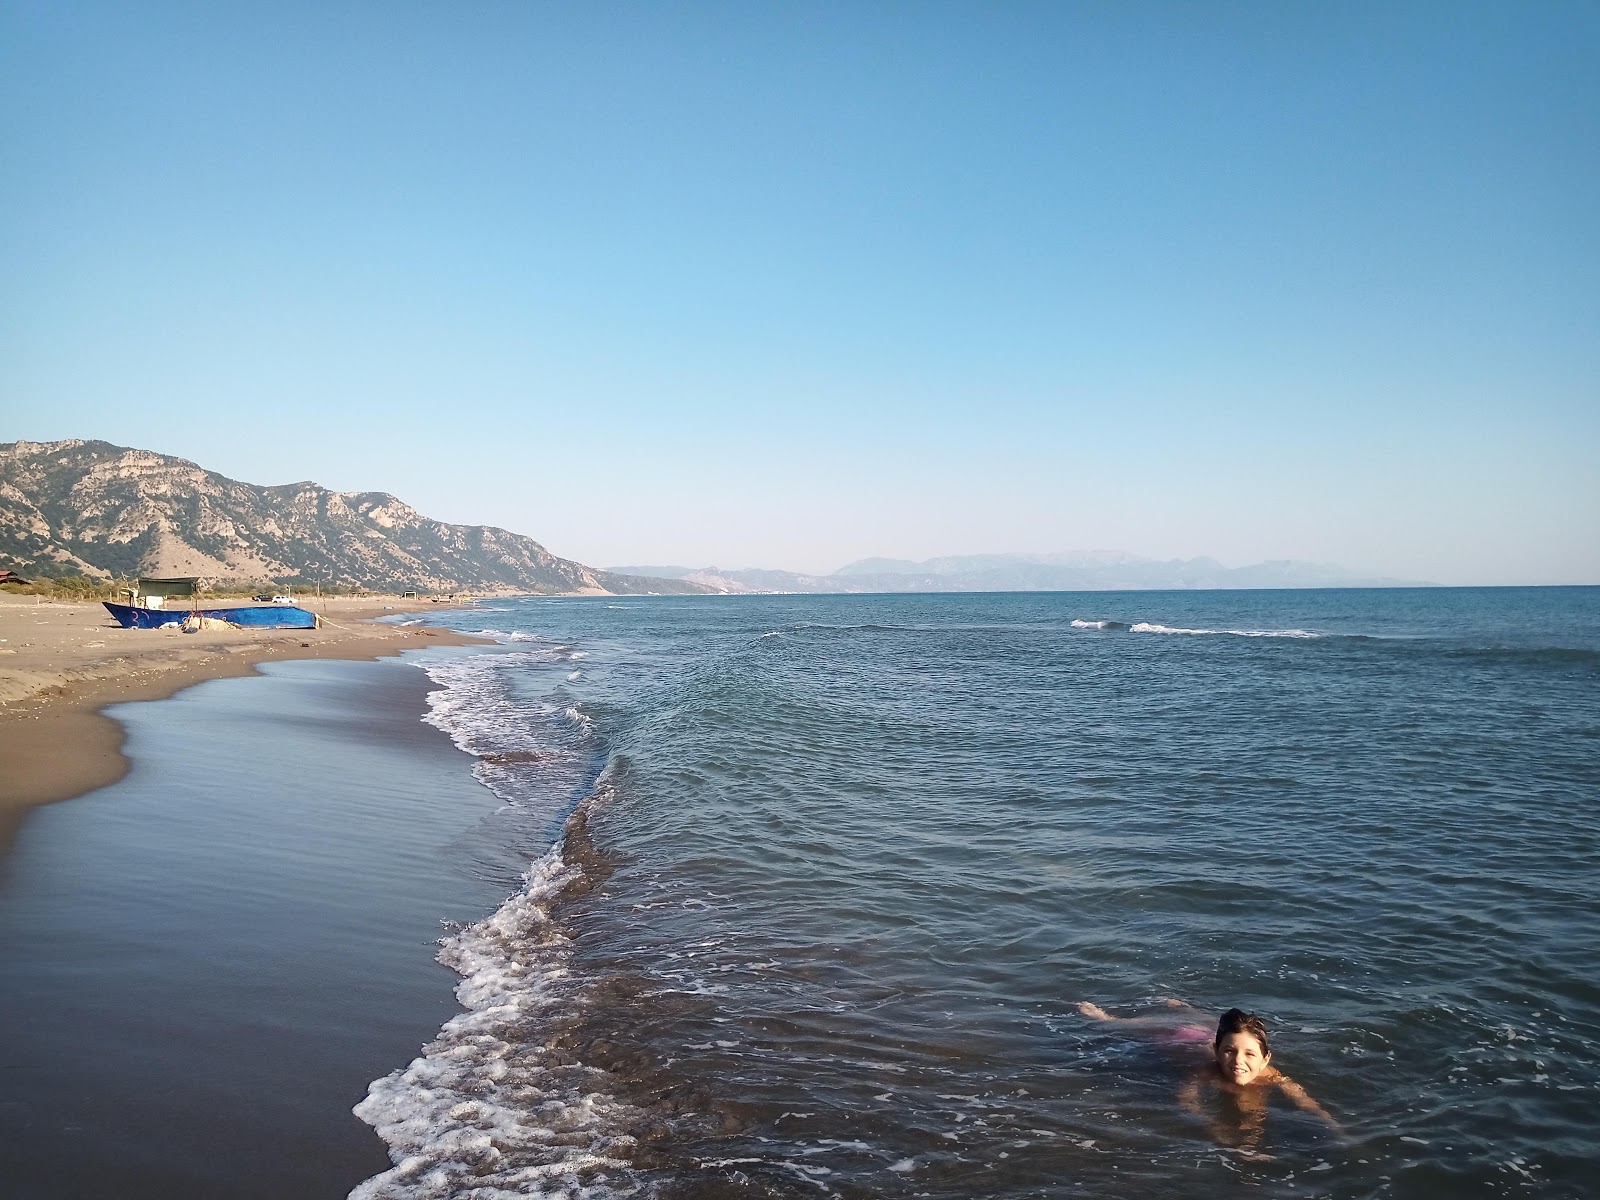 Photo de Velipoja Beach - endroit populaire parmi les connaisseurs de la détente